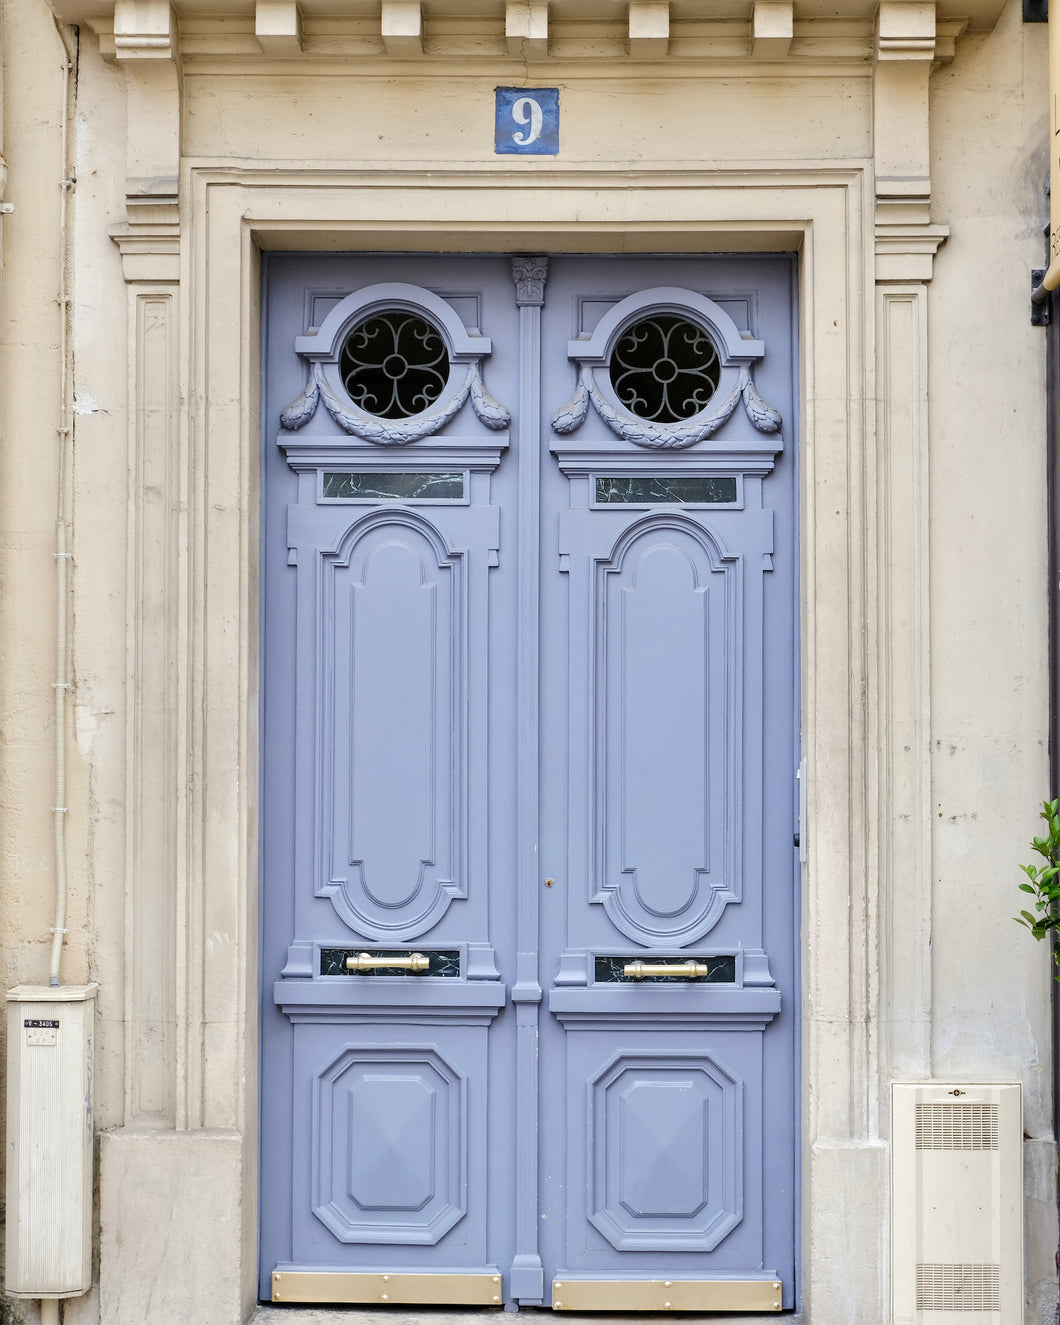 Periwinkle Blue Door - Paris Print - La Porte Bonheur